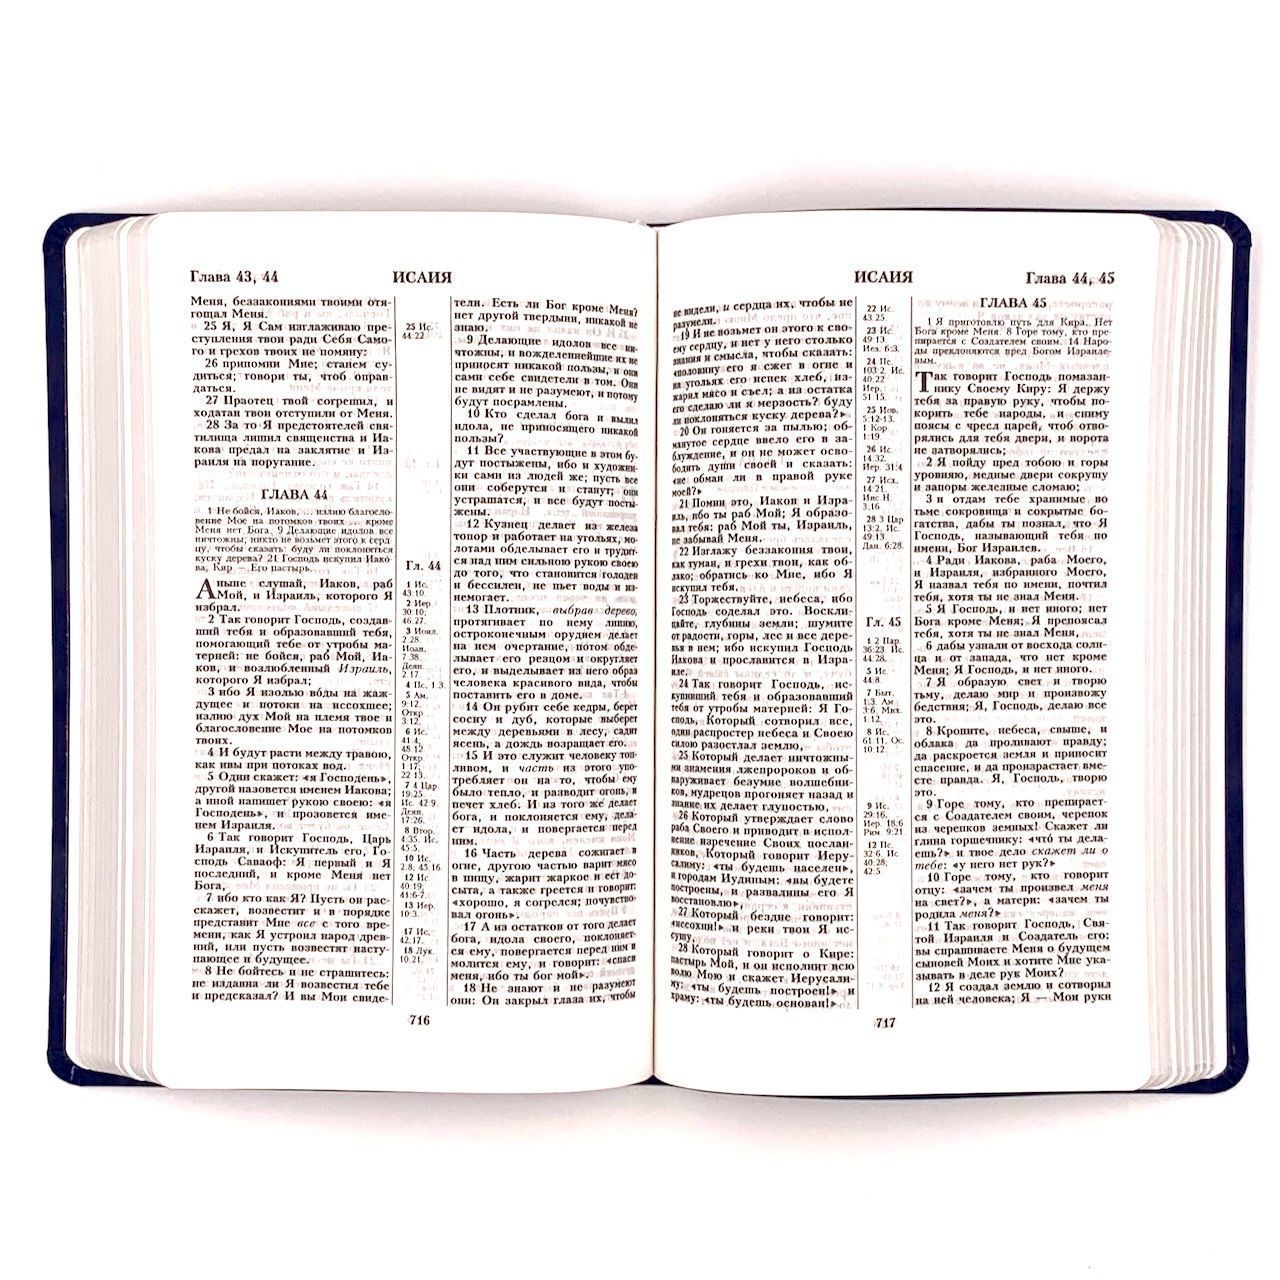 Библия 055 код F3 дизайн "термо рамка барокко", переплет из искусственной кожи, цвет темно-синий матовый, 140*215 мм